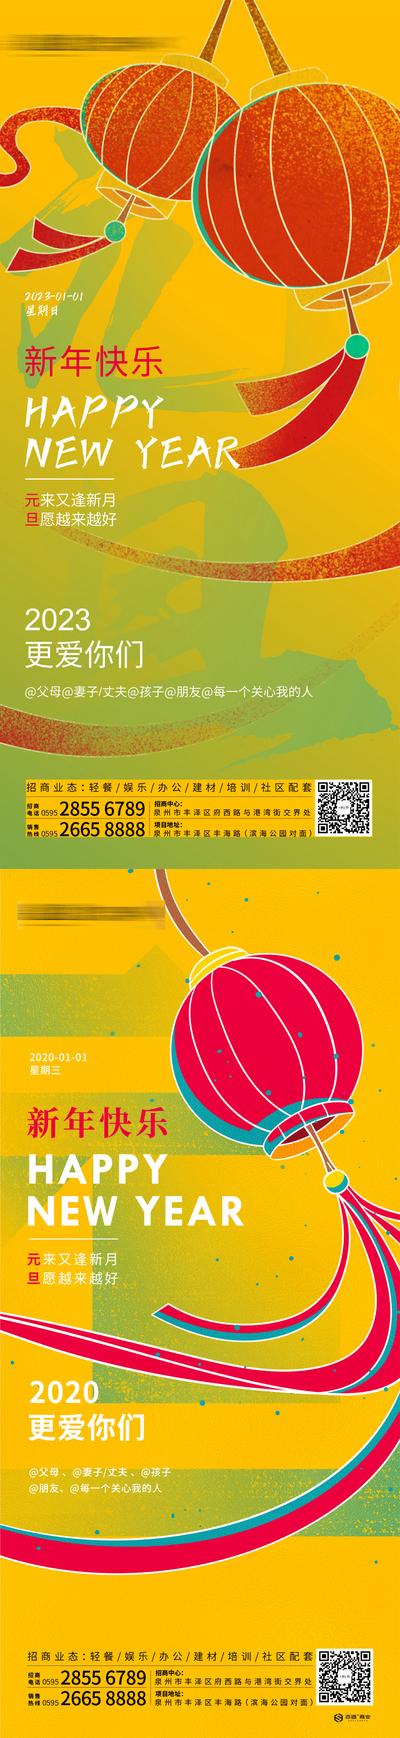 南门网 海报 地产 公历节日 元旦 新年 别墅 时代 灯笼 系列